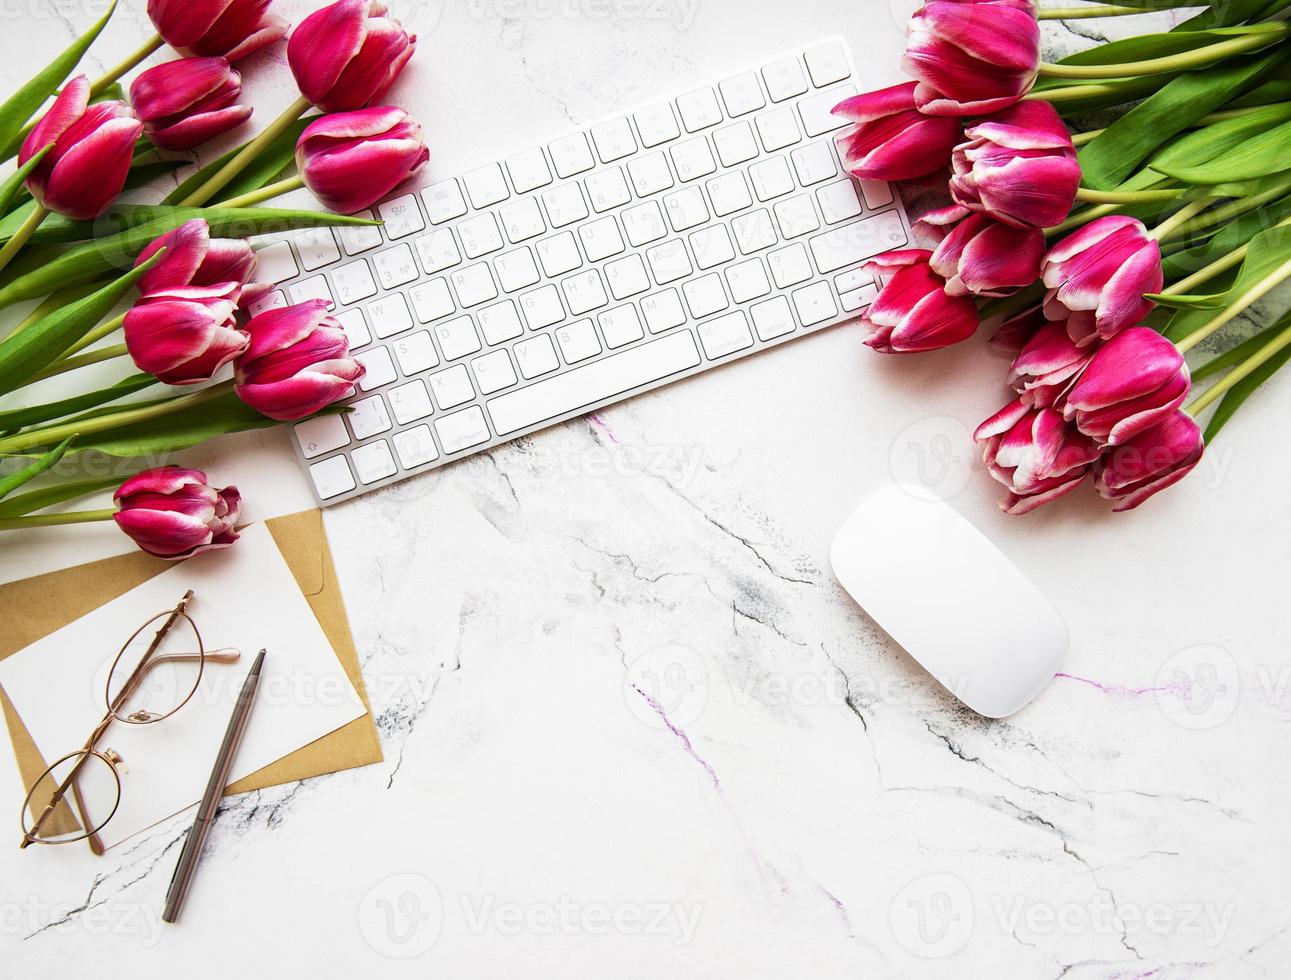 espace de travail avec clavier et tulipes photo